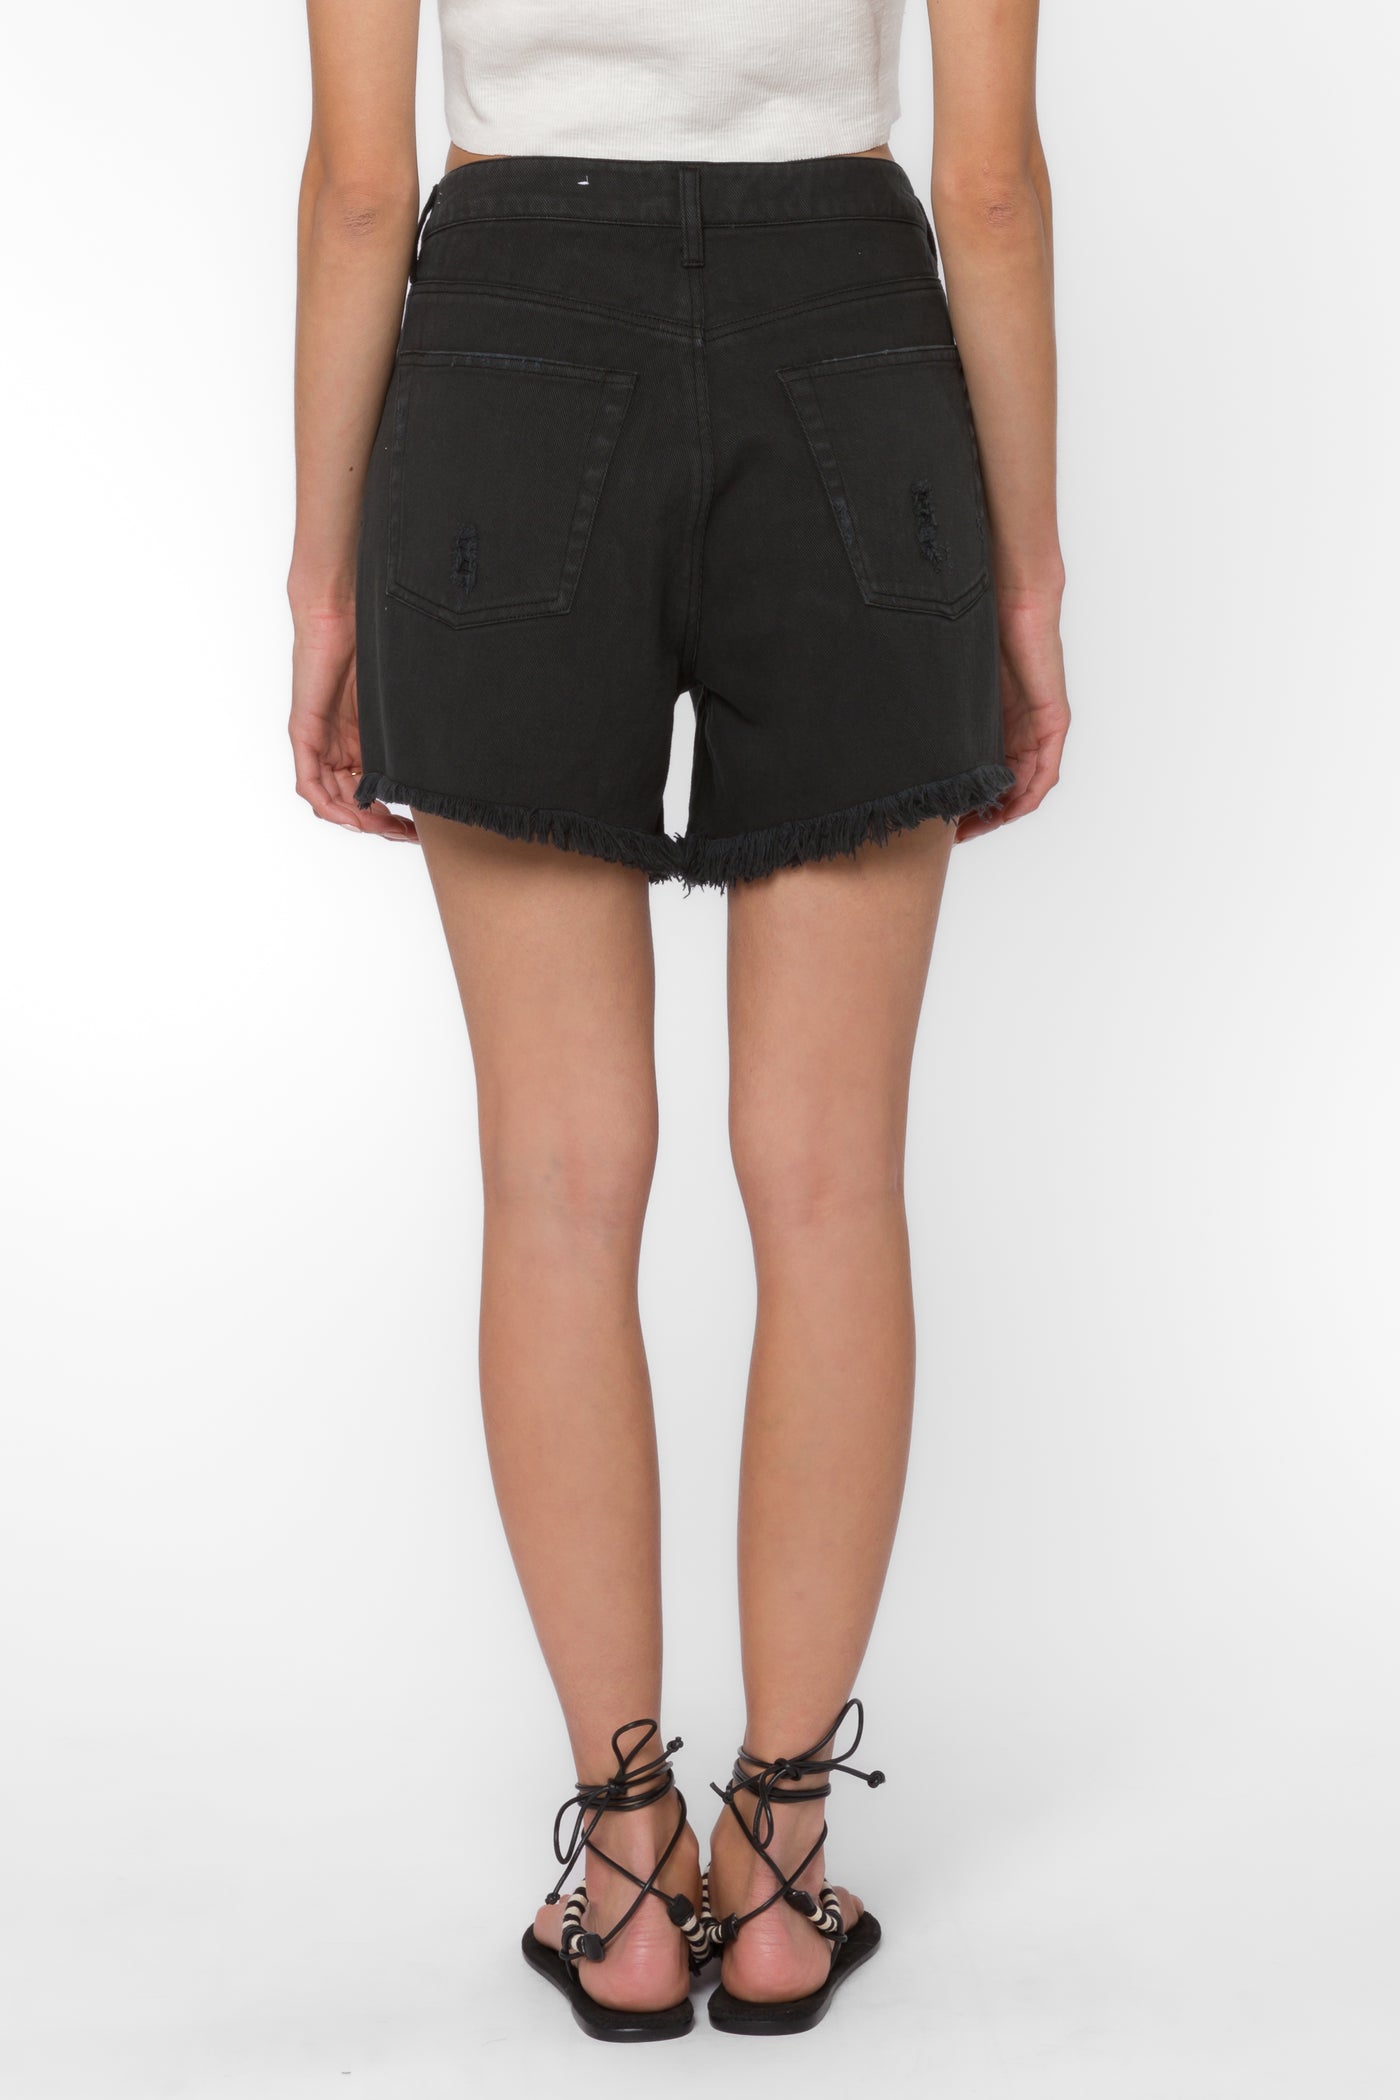 Fargo Black Shorts - Shorts - Velvet Heart Clothing